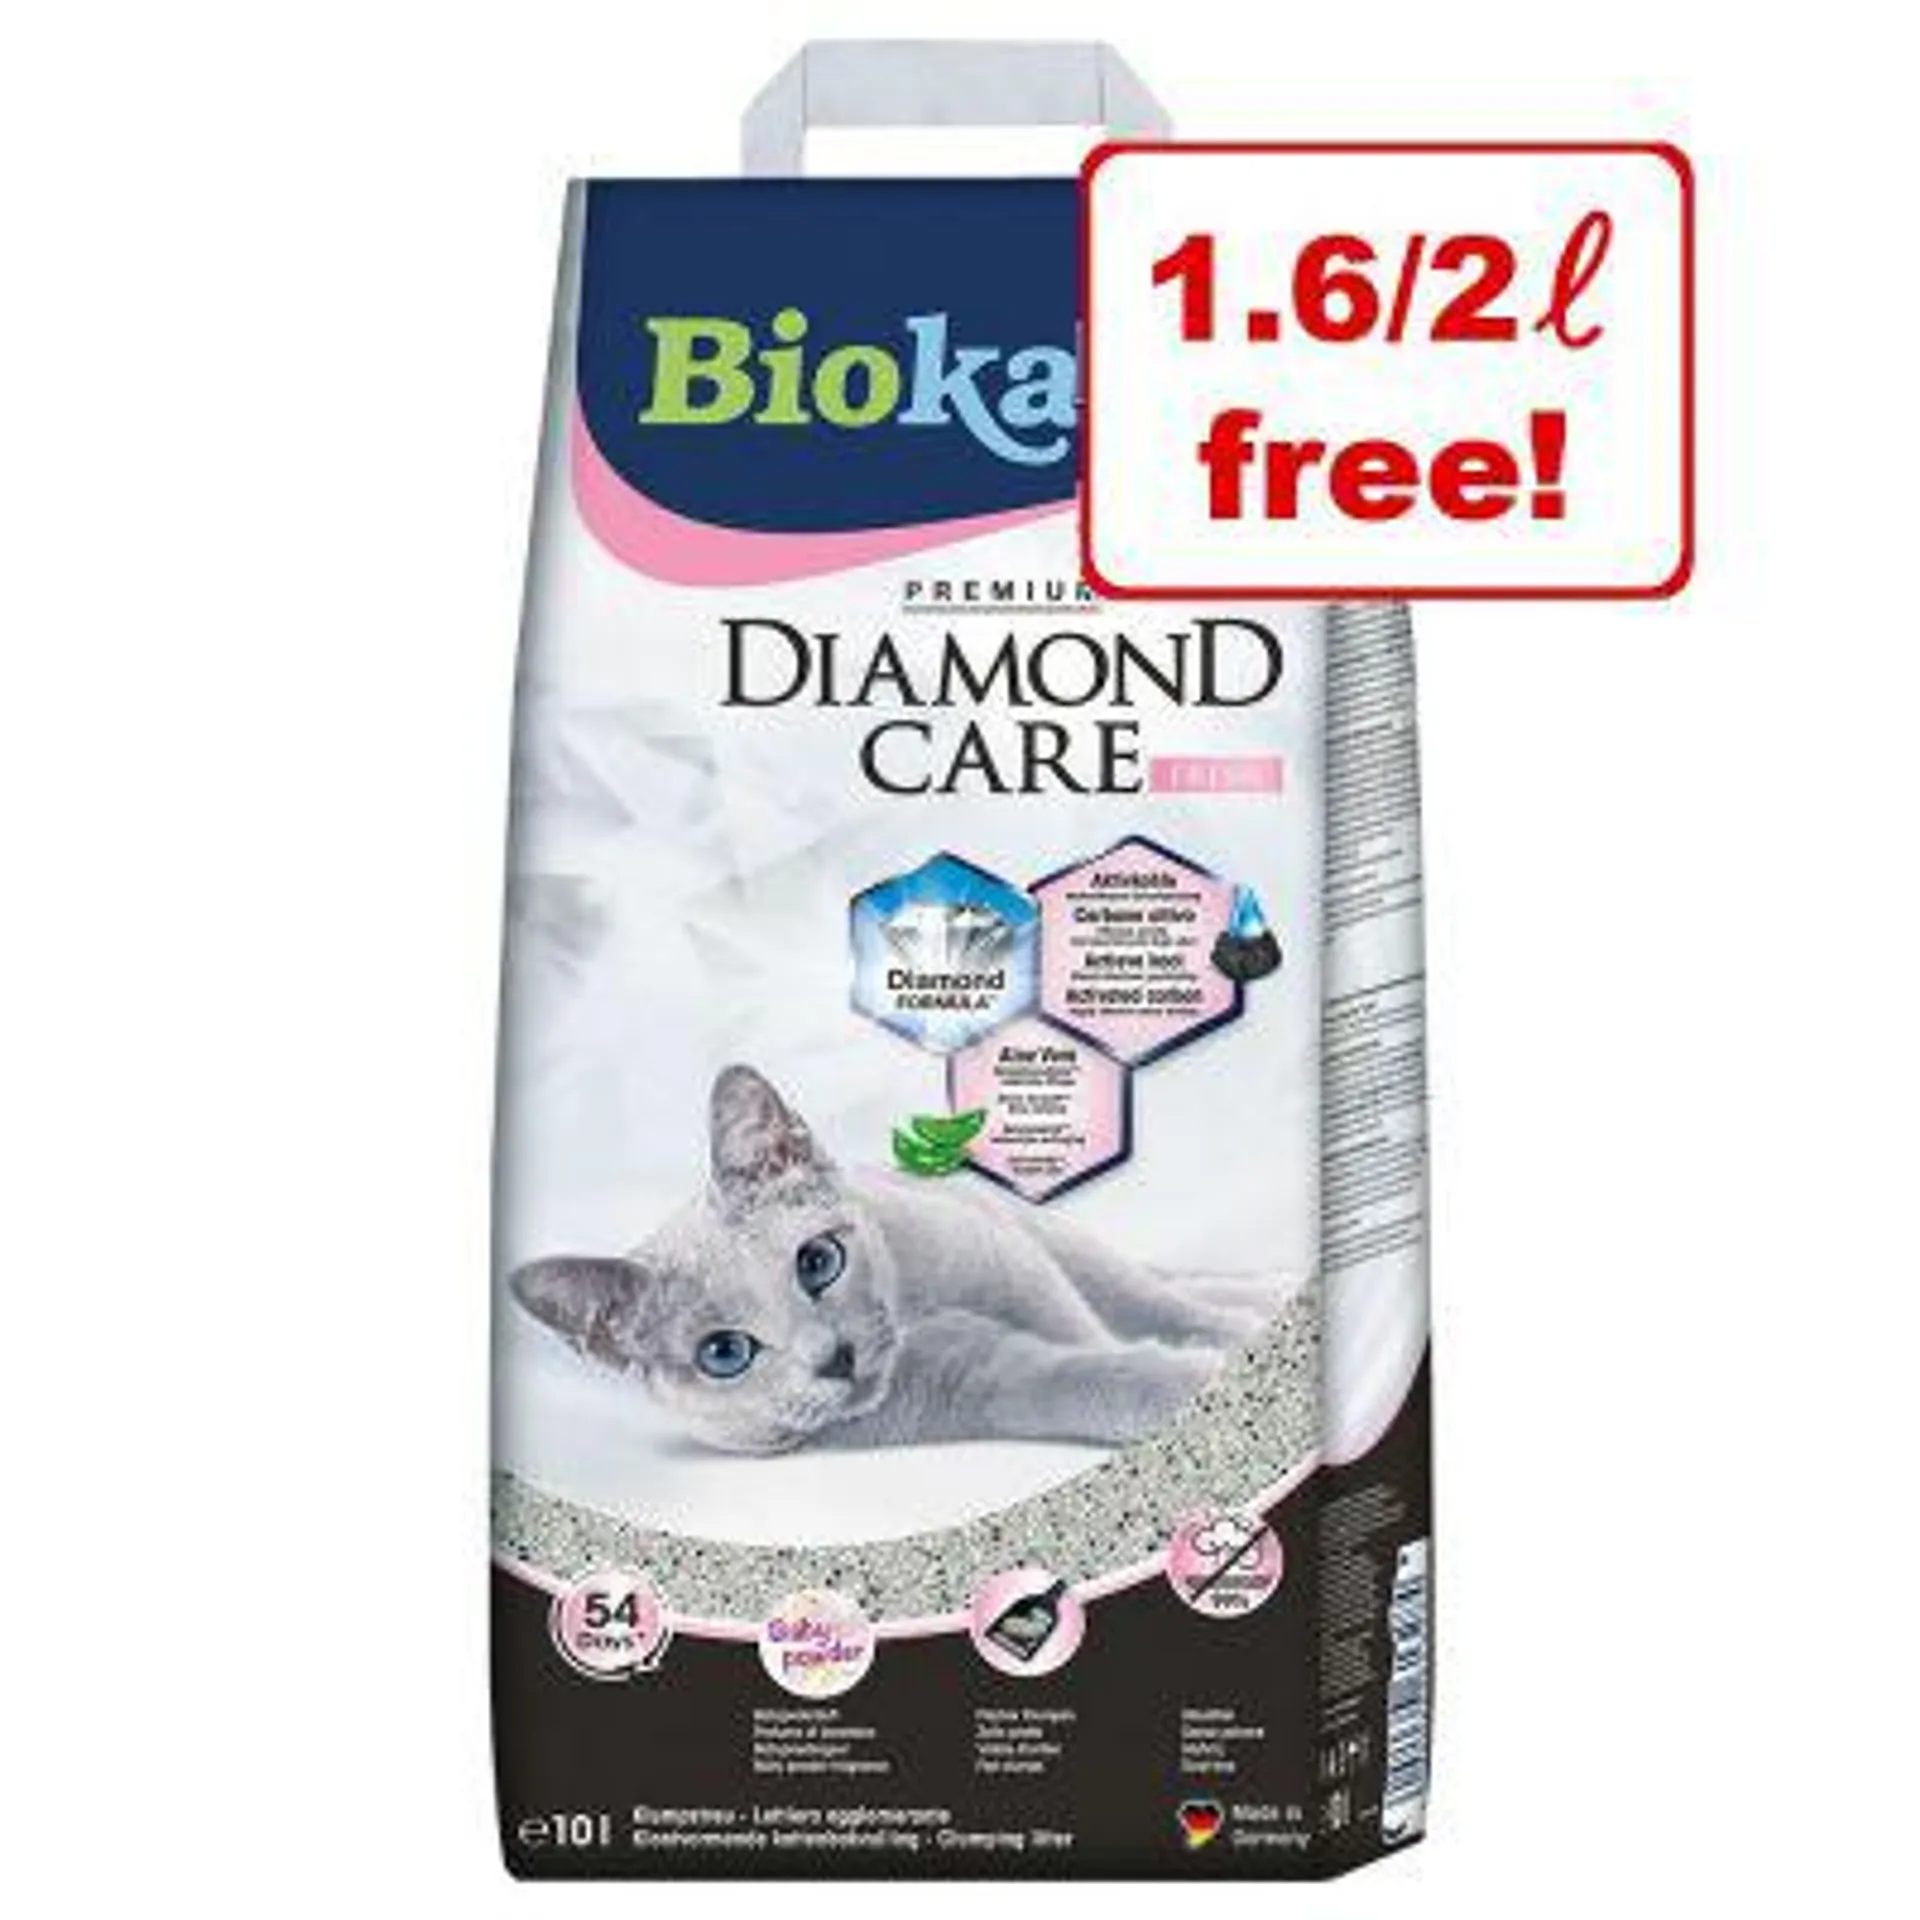 8l/10l Biokat's Diamond Care Cat Litter - 1.6l/2l Free!*